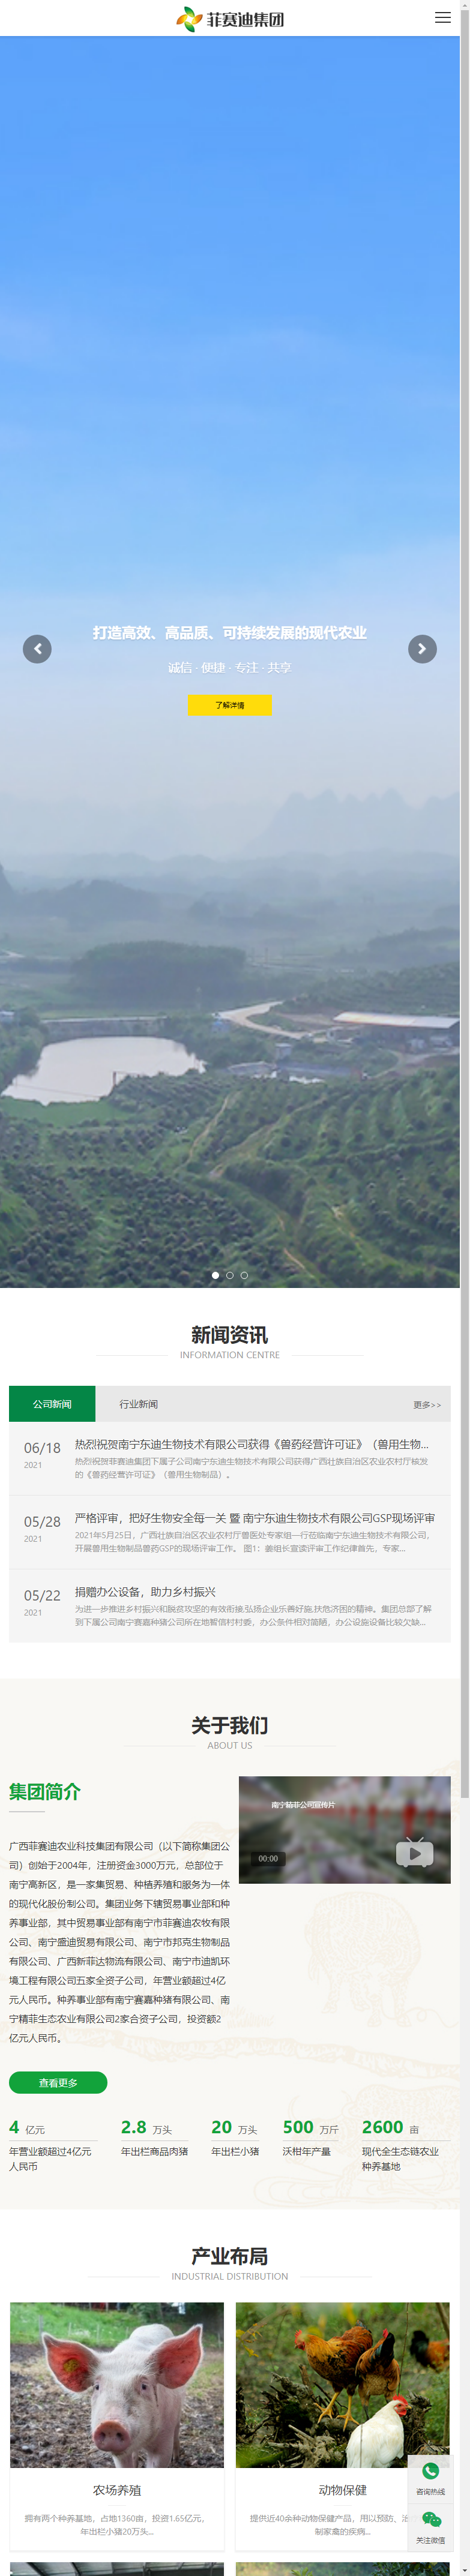 广西菲赛迪农业科技集团有限责任公司网站案例